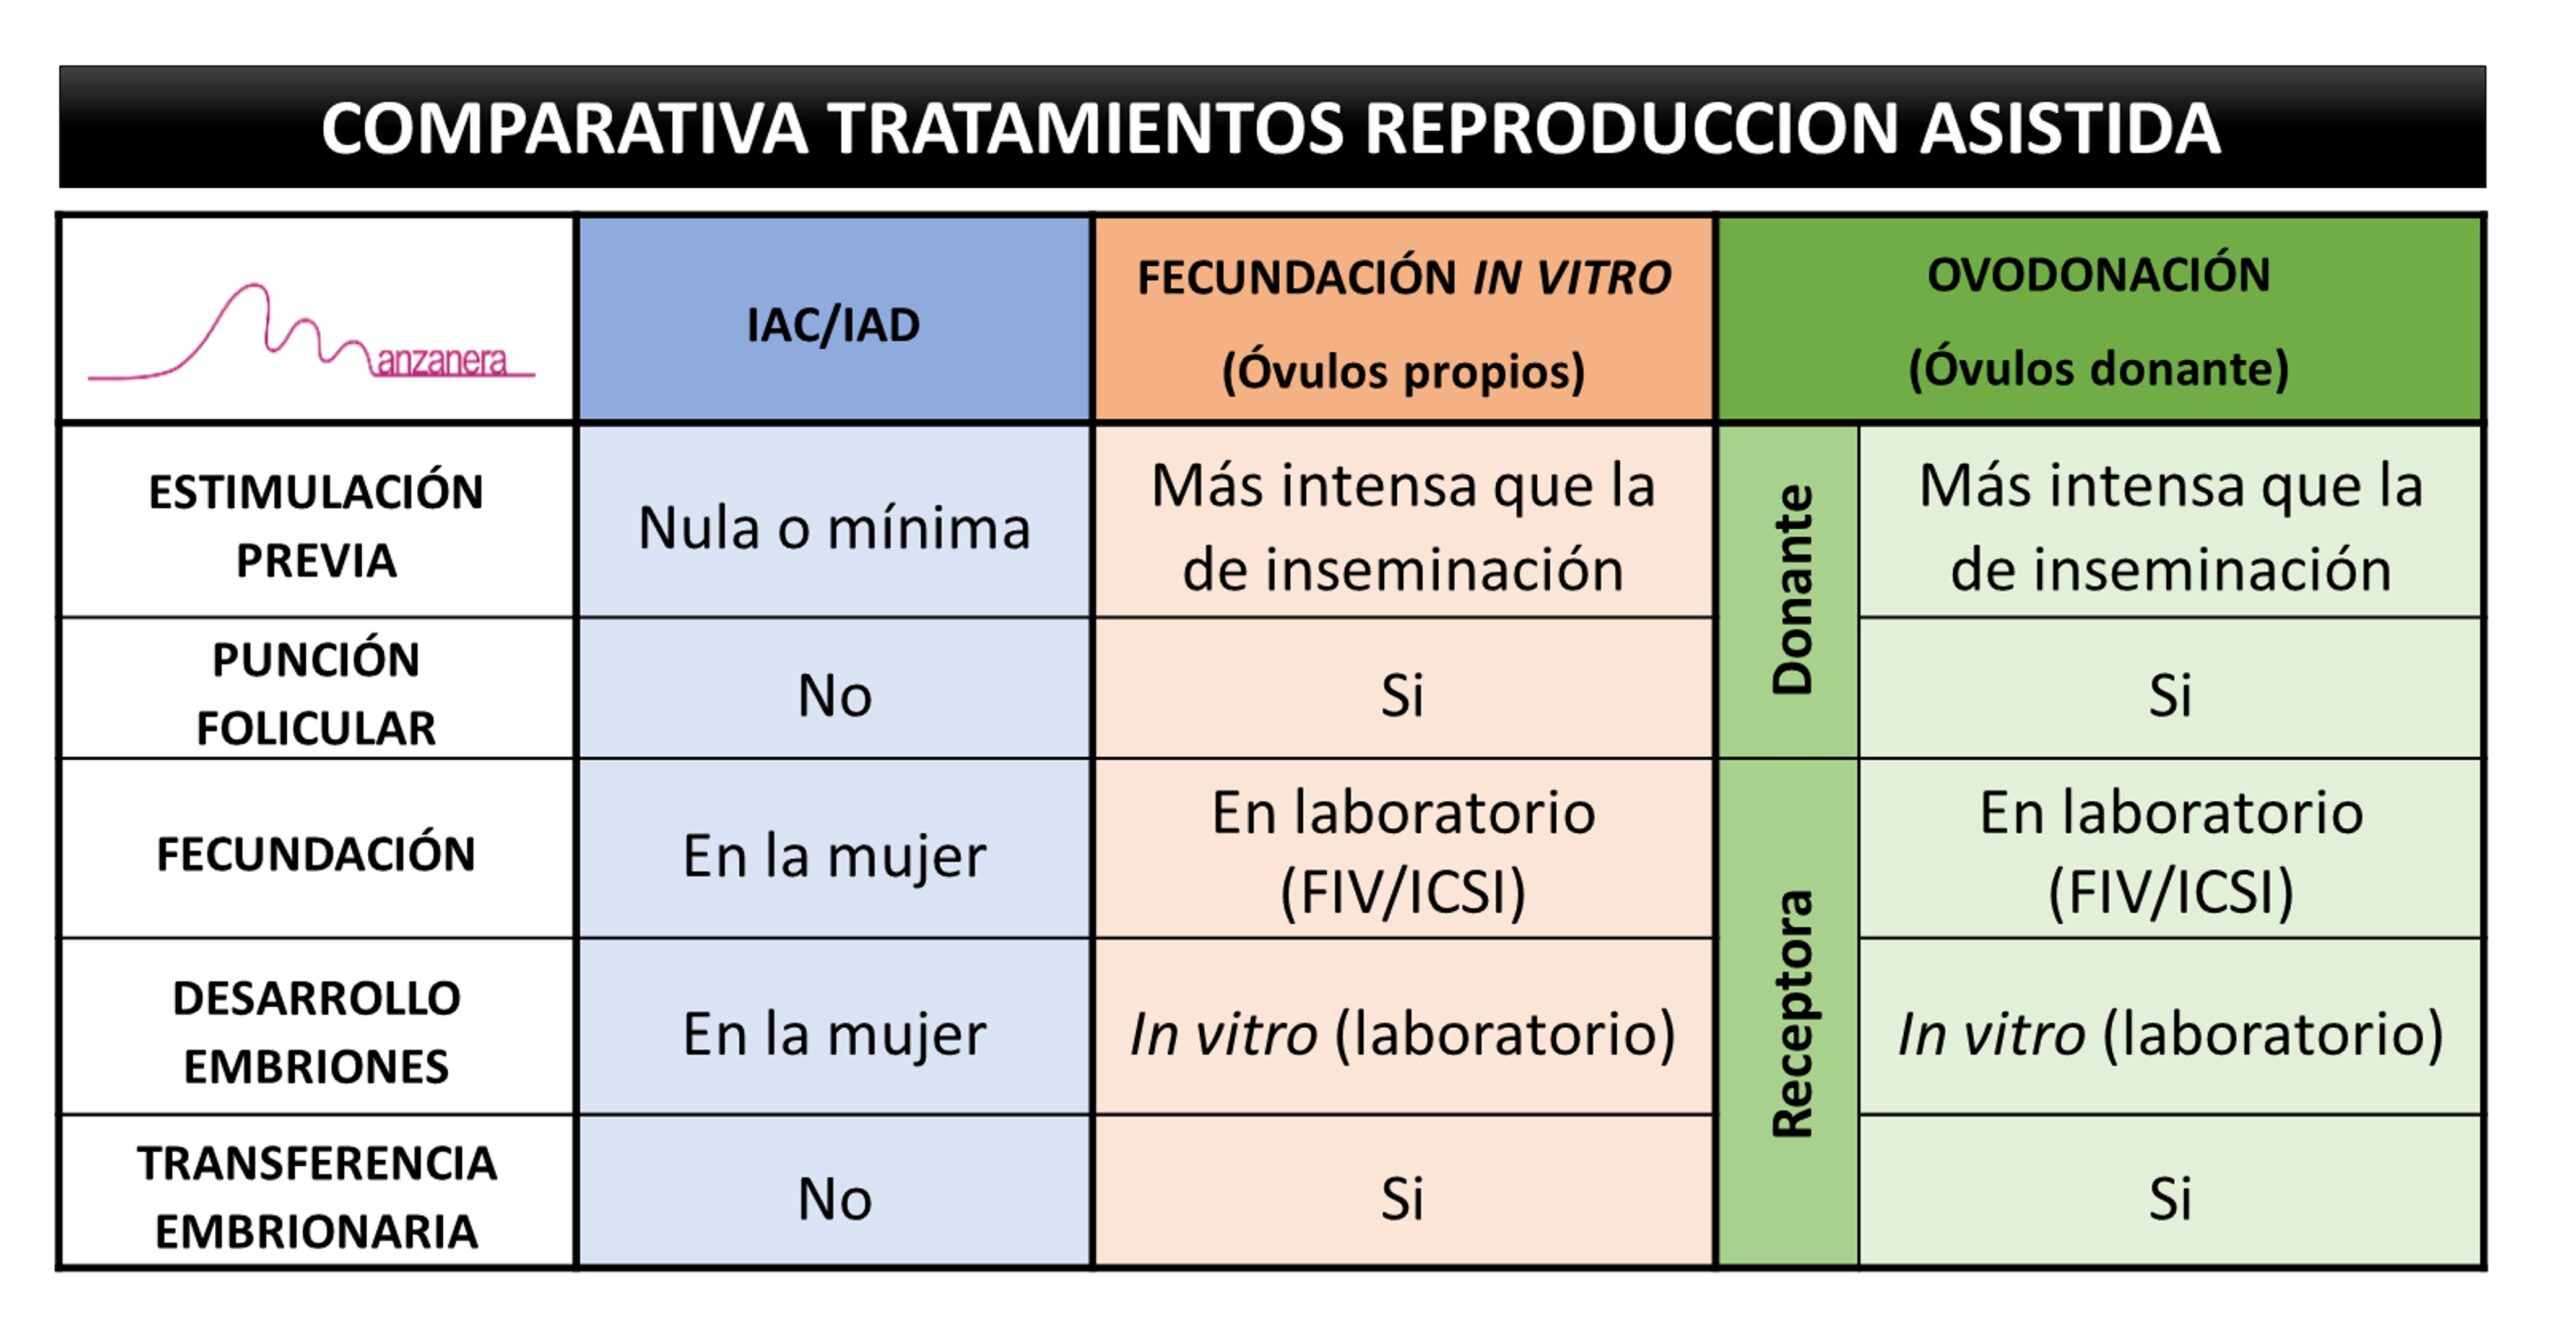 COMPARATIVA TRATAMIENTOS DE REPRODUCCION ASISTIDA (INSEMINACION, FIV-ICSI,  OVODONACION) - Centro Médico Manzanera